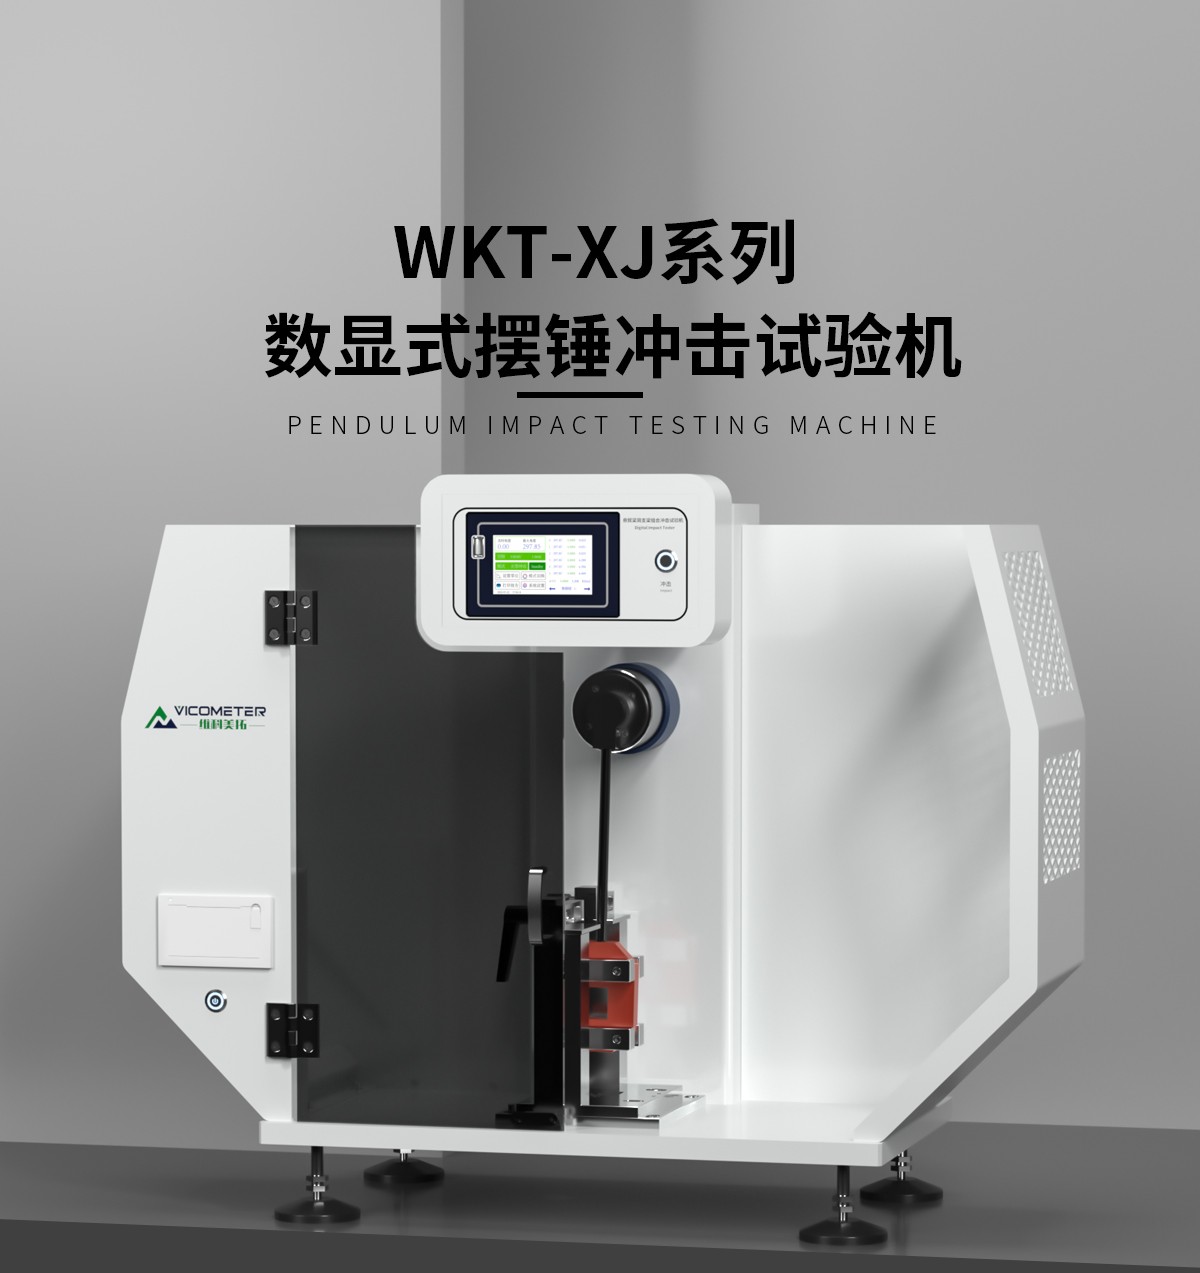 WKT-XJ8001型触摸屏悬简组合式冲击试验机